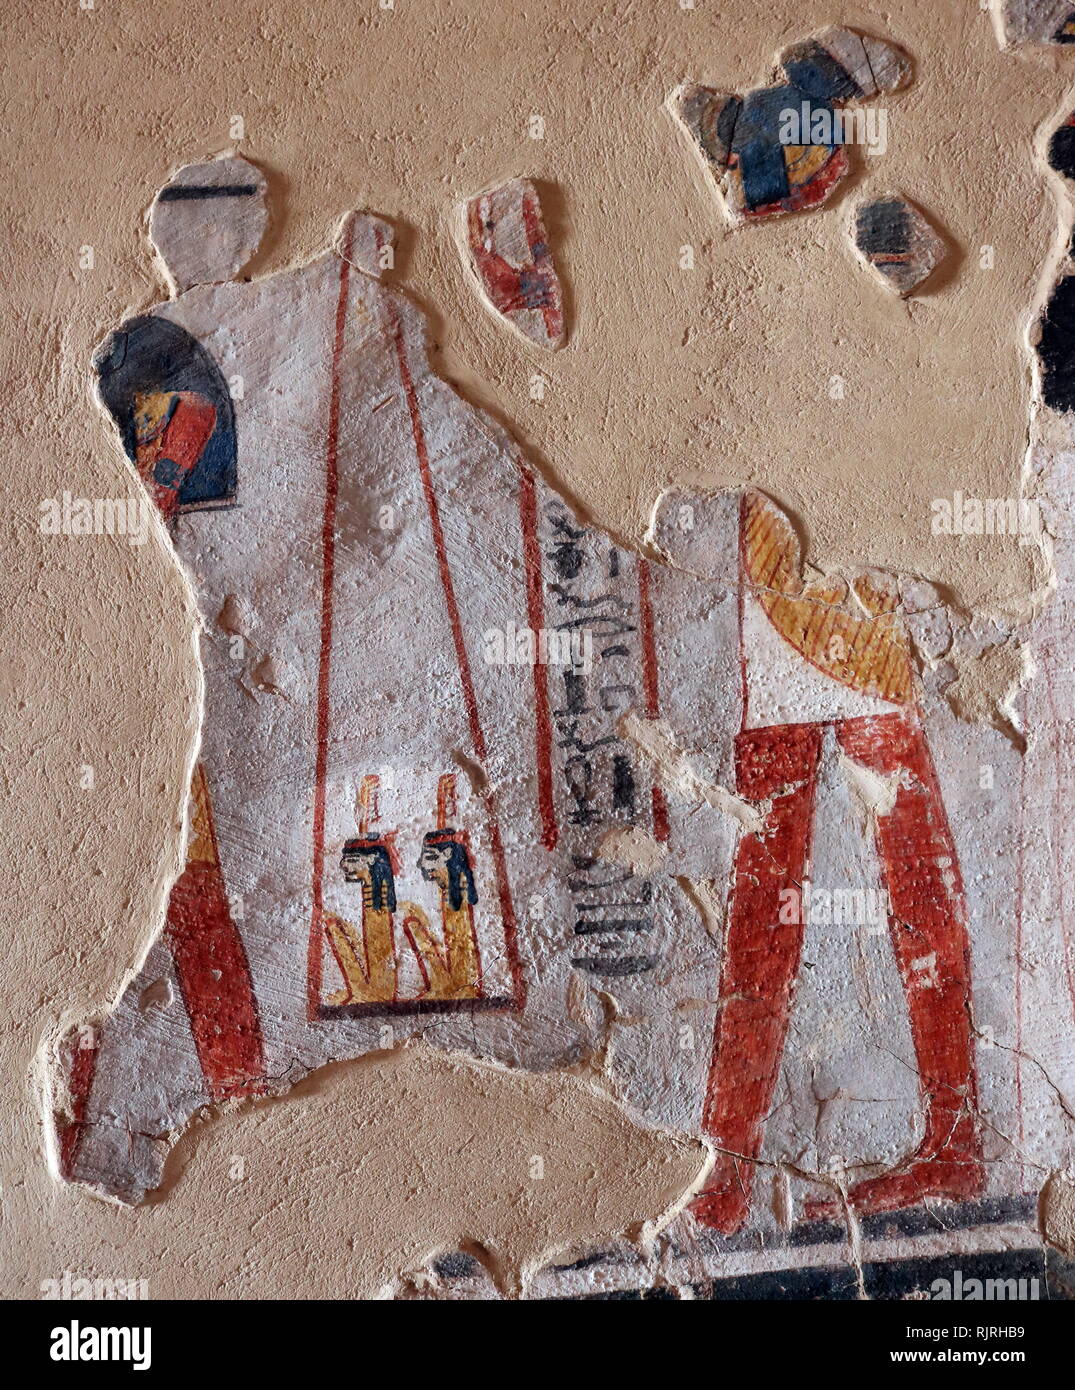 Pittura murale all'interno della tomba tebana di Roy (TT255), nell' Dra Abu el-Naga'. Esso fa parte della necropoli tebana, situato sulla sponda occidentale del Nilo di fronte a Luxor. Il sepolcro è il luogo di sepoltura degli antichi Egiziani ufficiale, Roy, vissuto alla fine del XVIII dinastia, durante il regno del re Horemheb. Roy era uno scriba regale nelle tenute di Horemheb e di Amon. Sua moglie che appare con lui nella tomba dipinti, è denominato Nebtawy, o 'Tawy' Foto Stock